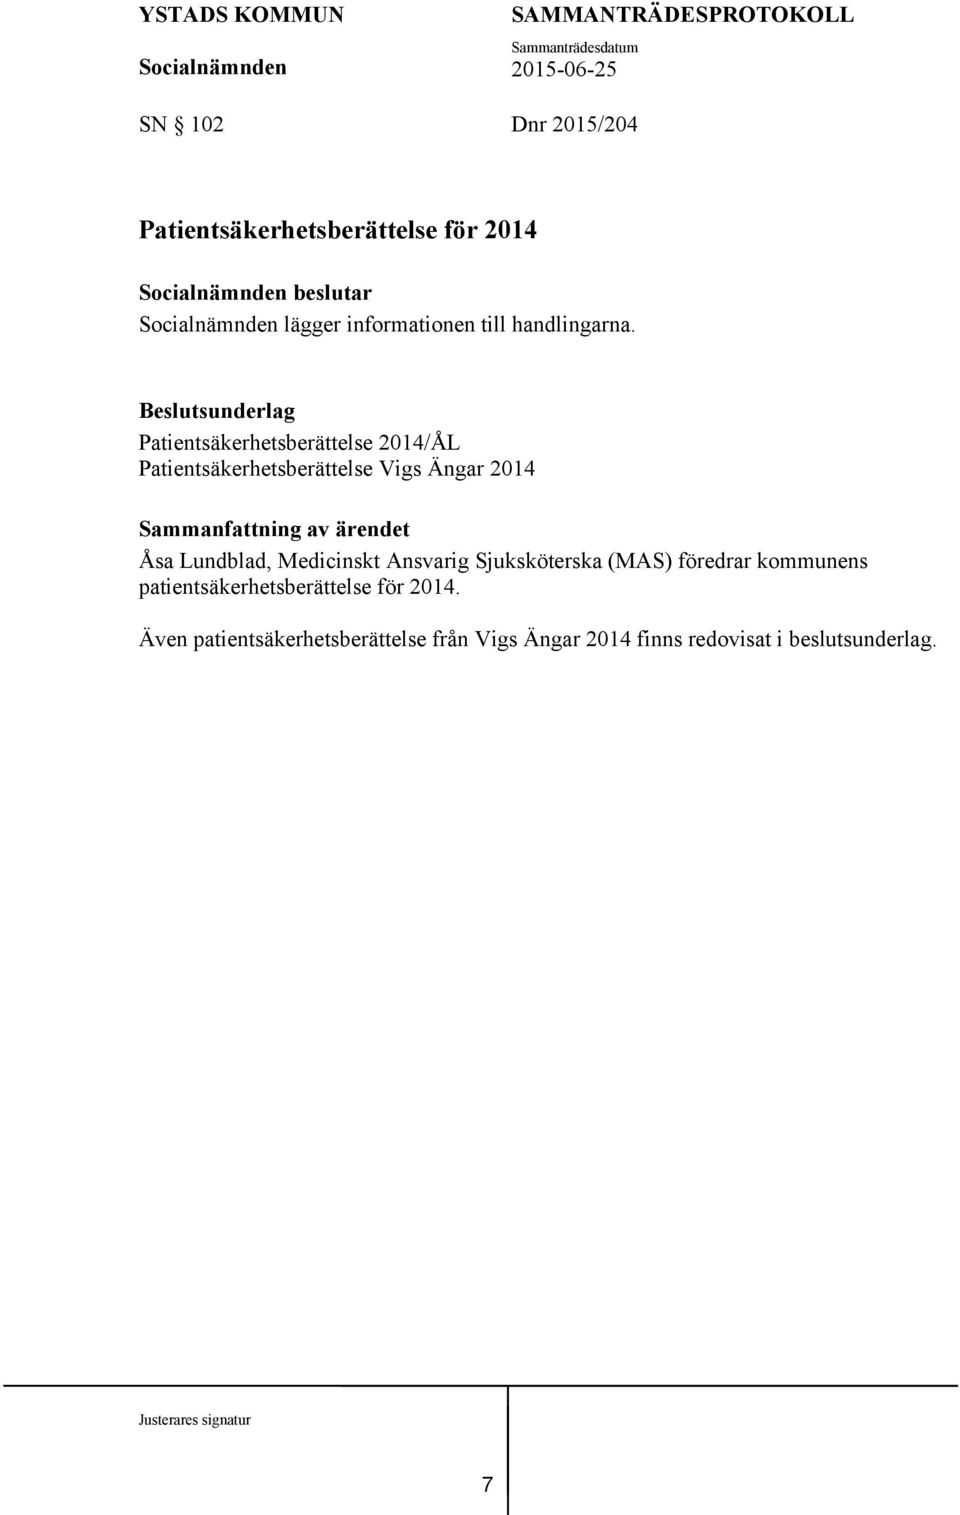 Beslutsunderlag Patientsäkerhetsberättelse 2014/ÅL Patientsäkerhetsberättelse Vigs Ängar 2014 Åsa